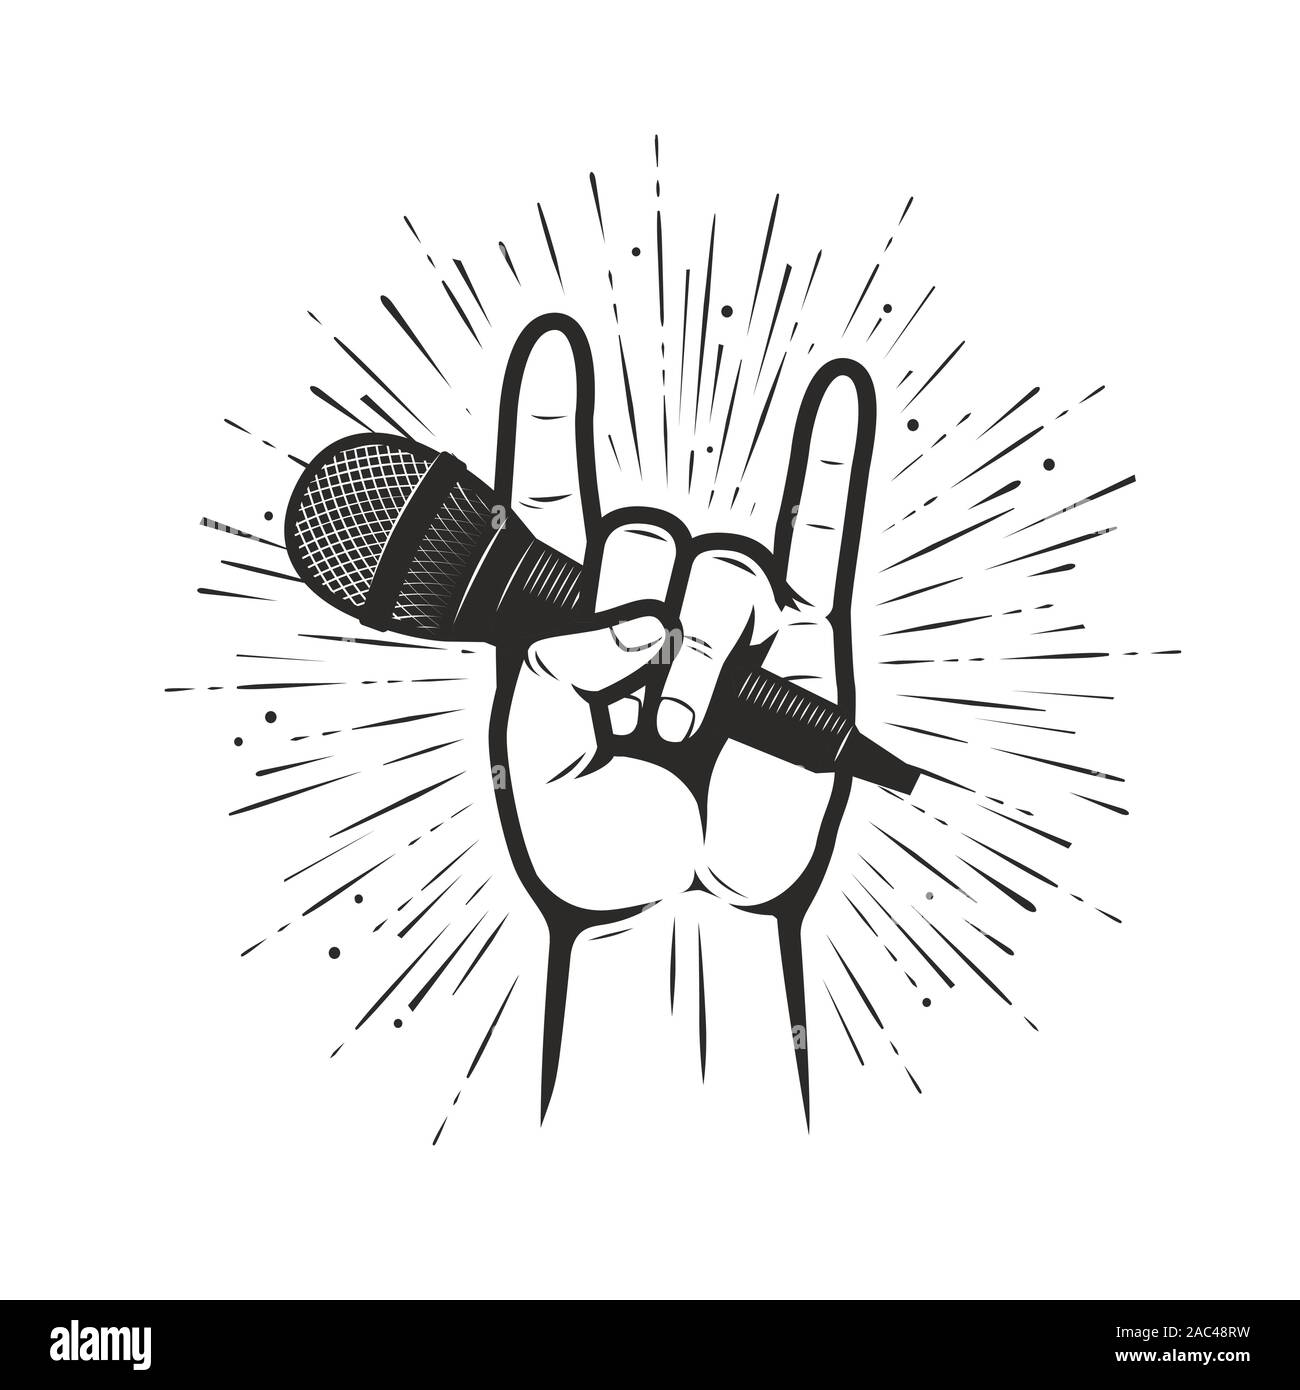 Simbolo o emblema musicale. Illustrazione del microfono in mano Illustrazione Vettoriale